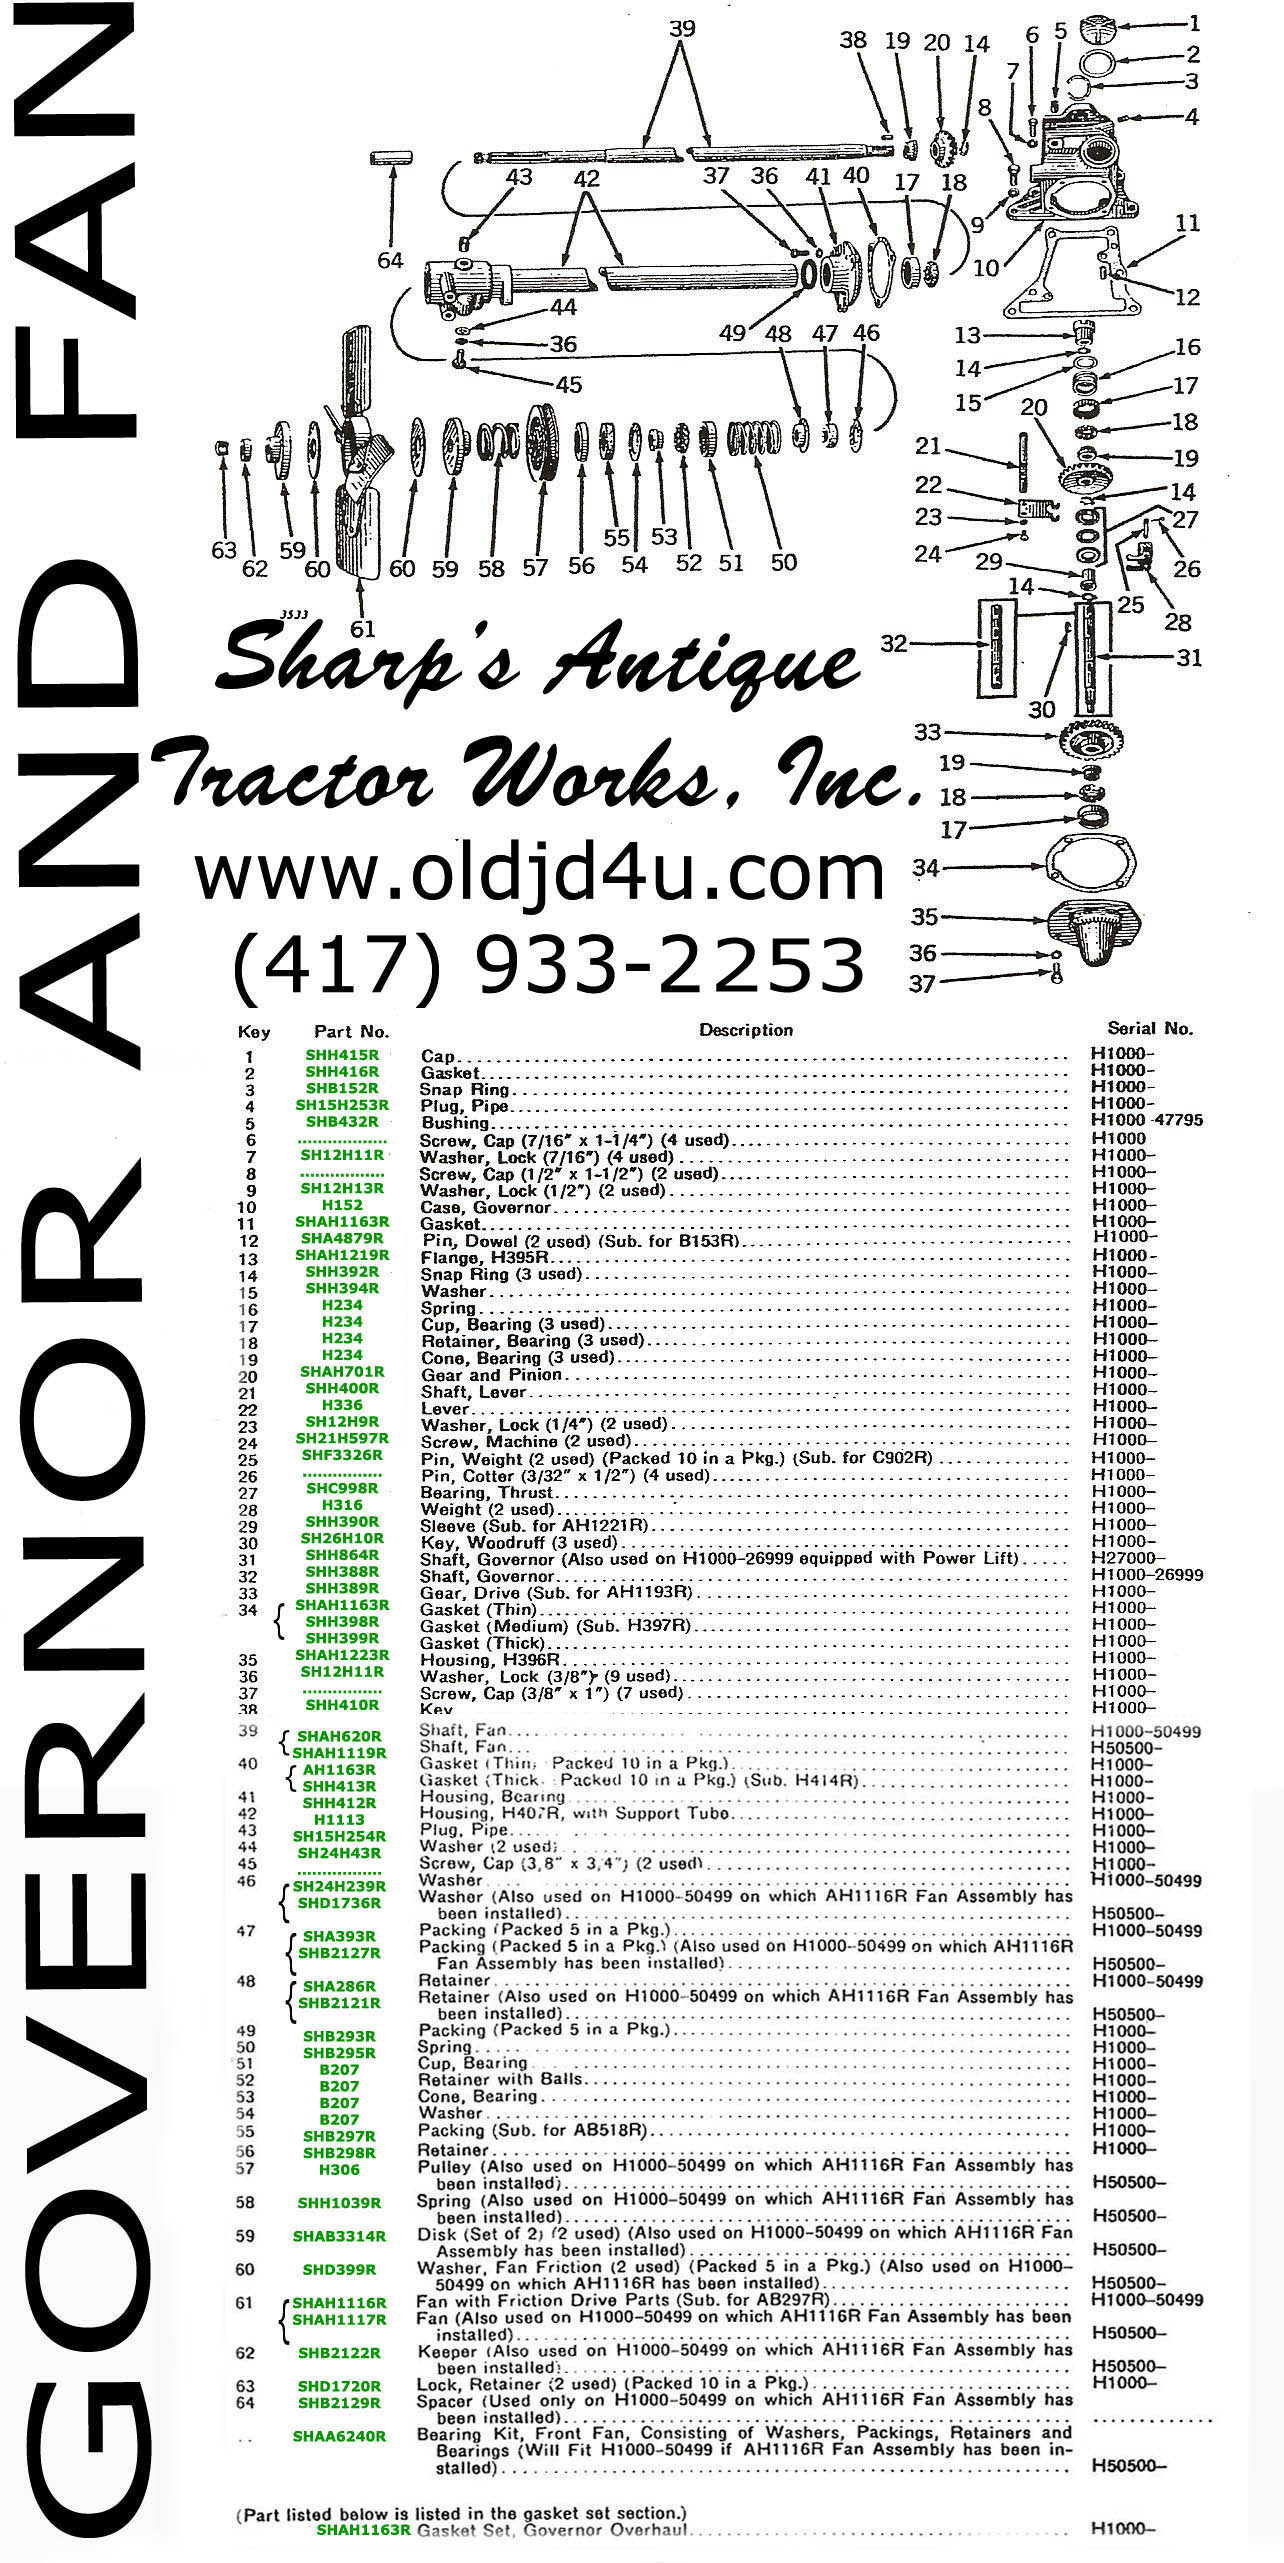 John Deere 420 Parts Diagram